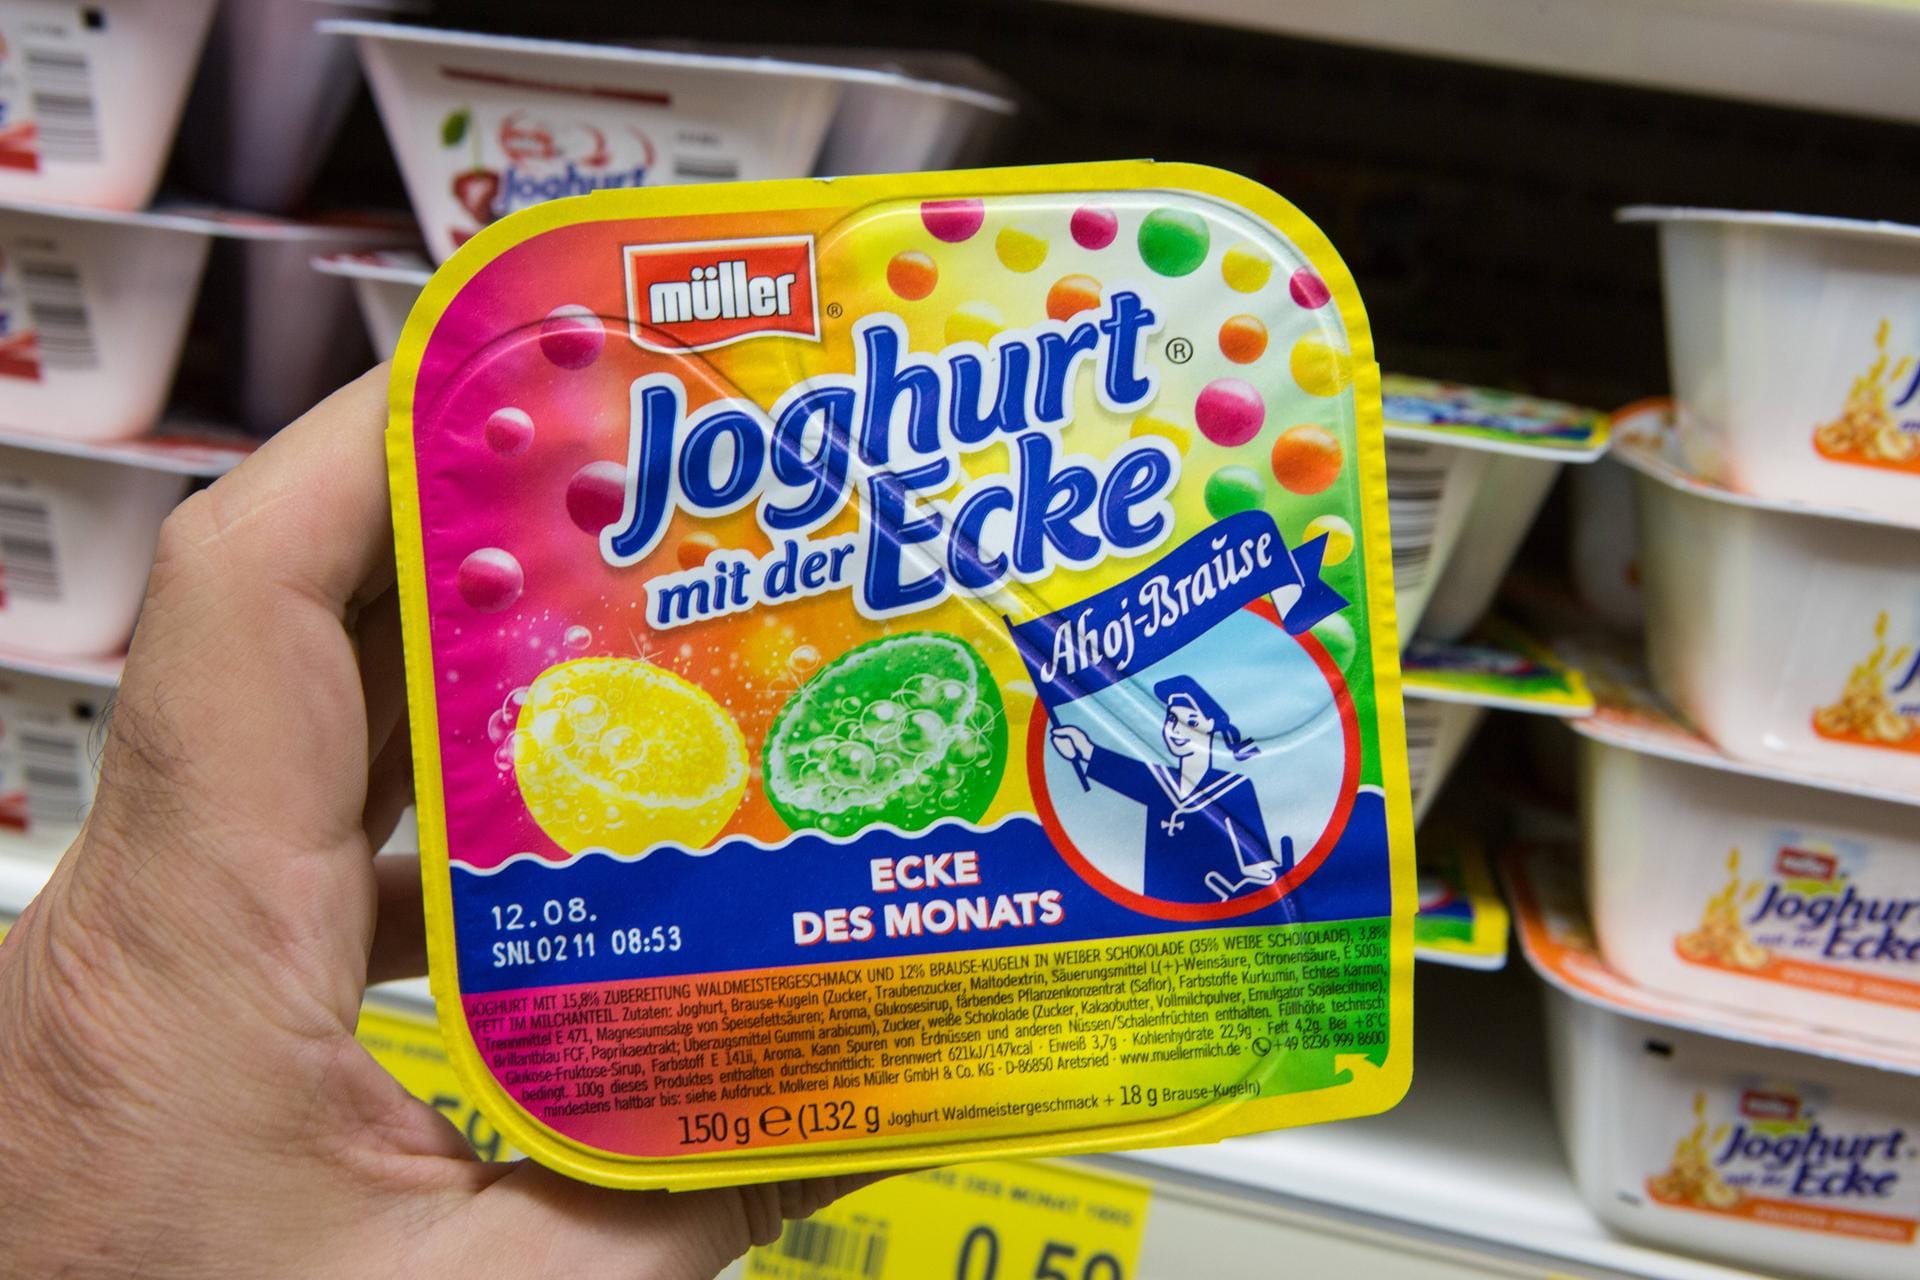 Joghurt mit der Ecke Ahoi-Brausepulver: Das Kult-Brausepulver von Frigeo gibt es mittlerweile auch als Joghurt mit der Ecke und in Dosen.